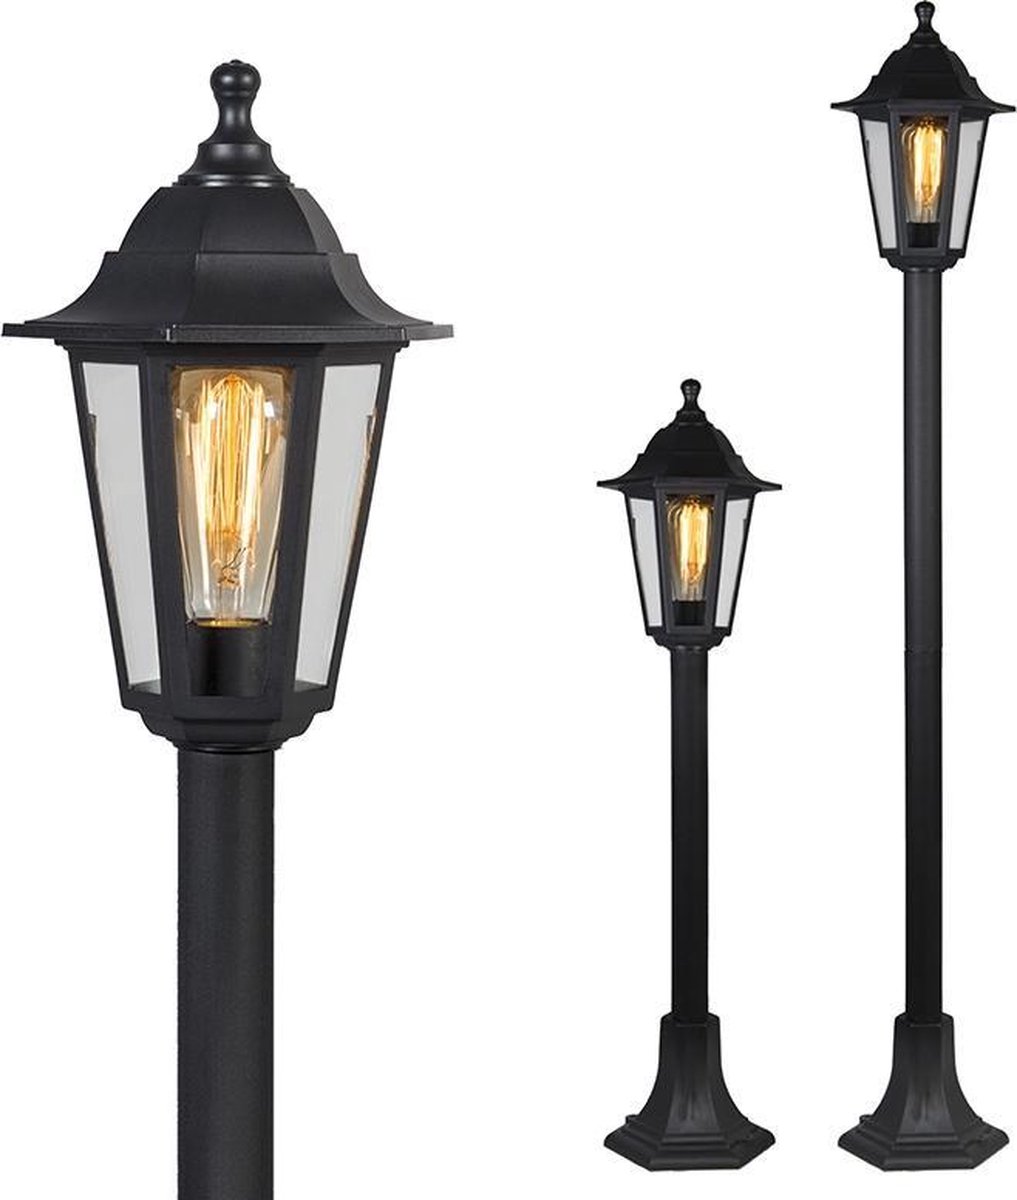 QAZQA new haven - Klassieke Vloerlamp | Staande Lamp - 1 lichts - H 1220 mm - Zwart - Buitenverlichting - QAZQA